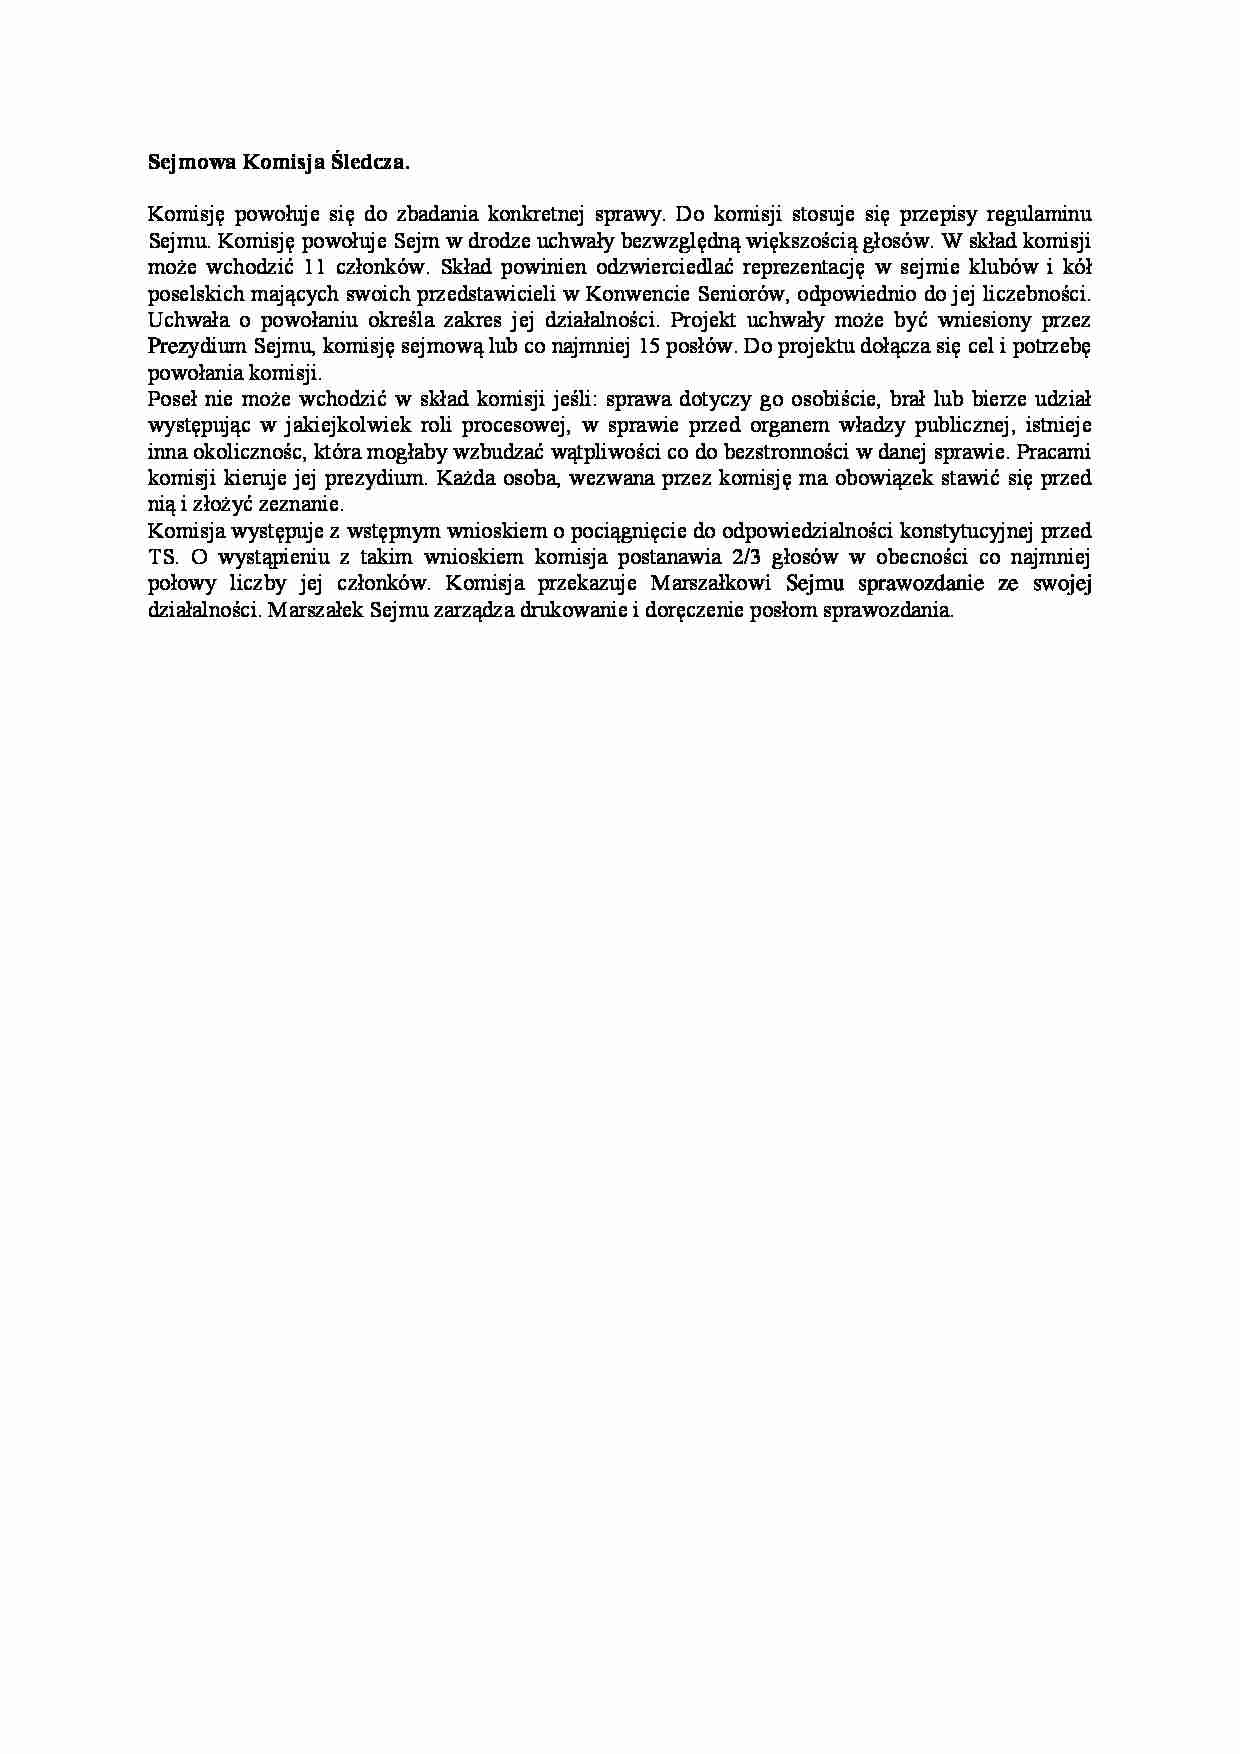  Sejmowa Komisja Śledcza-opracowanie - strona 1